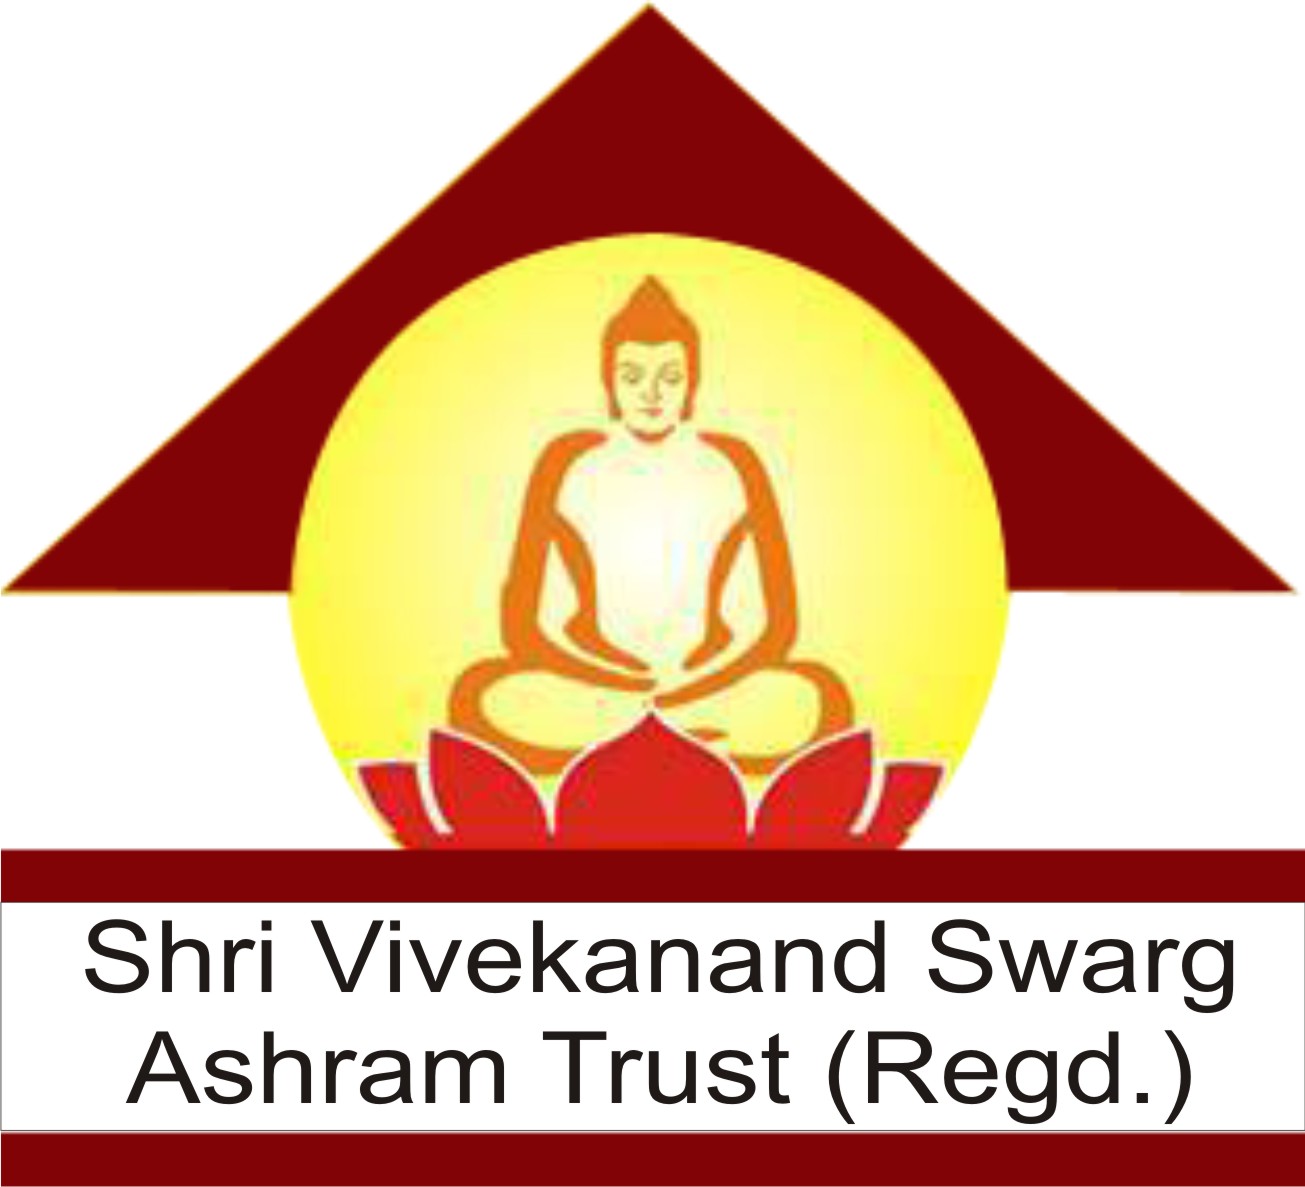 Shri Vivekanand Swarg Ashram Trust (Regd)